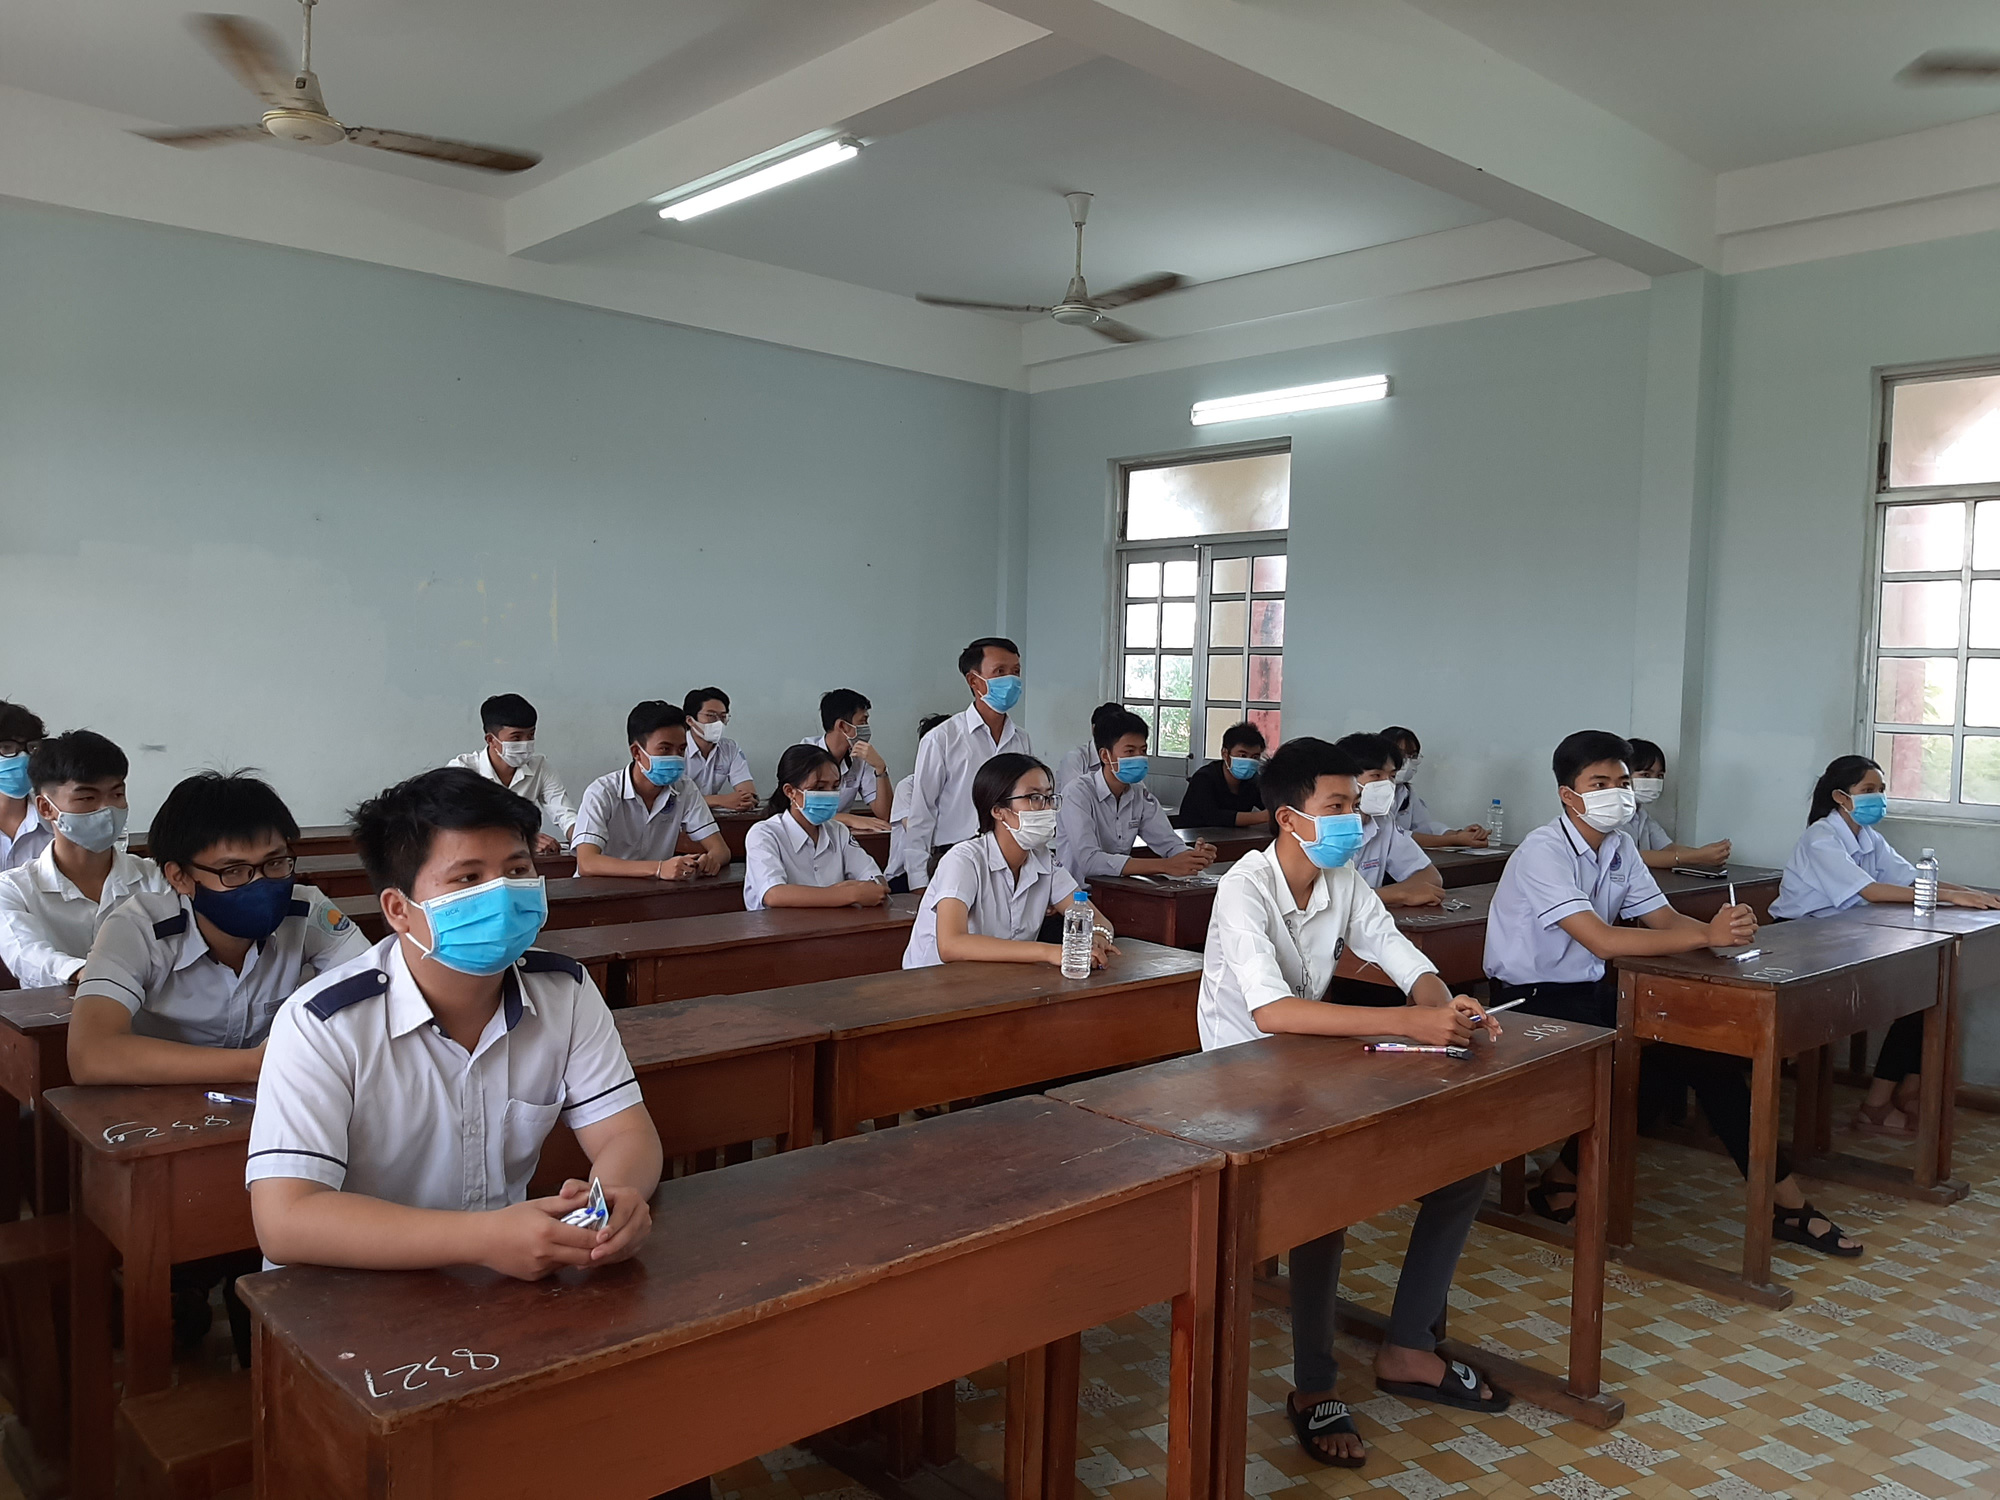 Phú Yên: Khẩn cấp hủy 2/26 điểm thi tốt nghiệp THPT vì có ca nghi ngờ nhiễm Covid-19 - Ảnh 2.